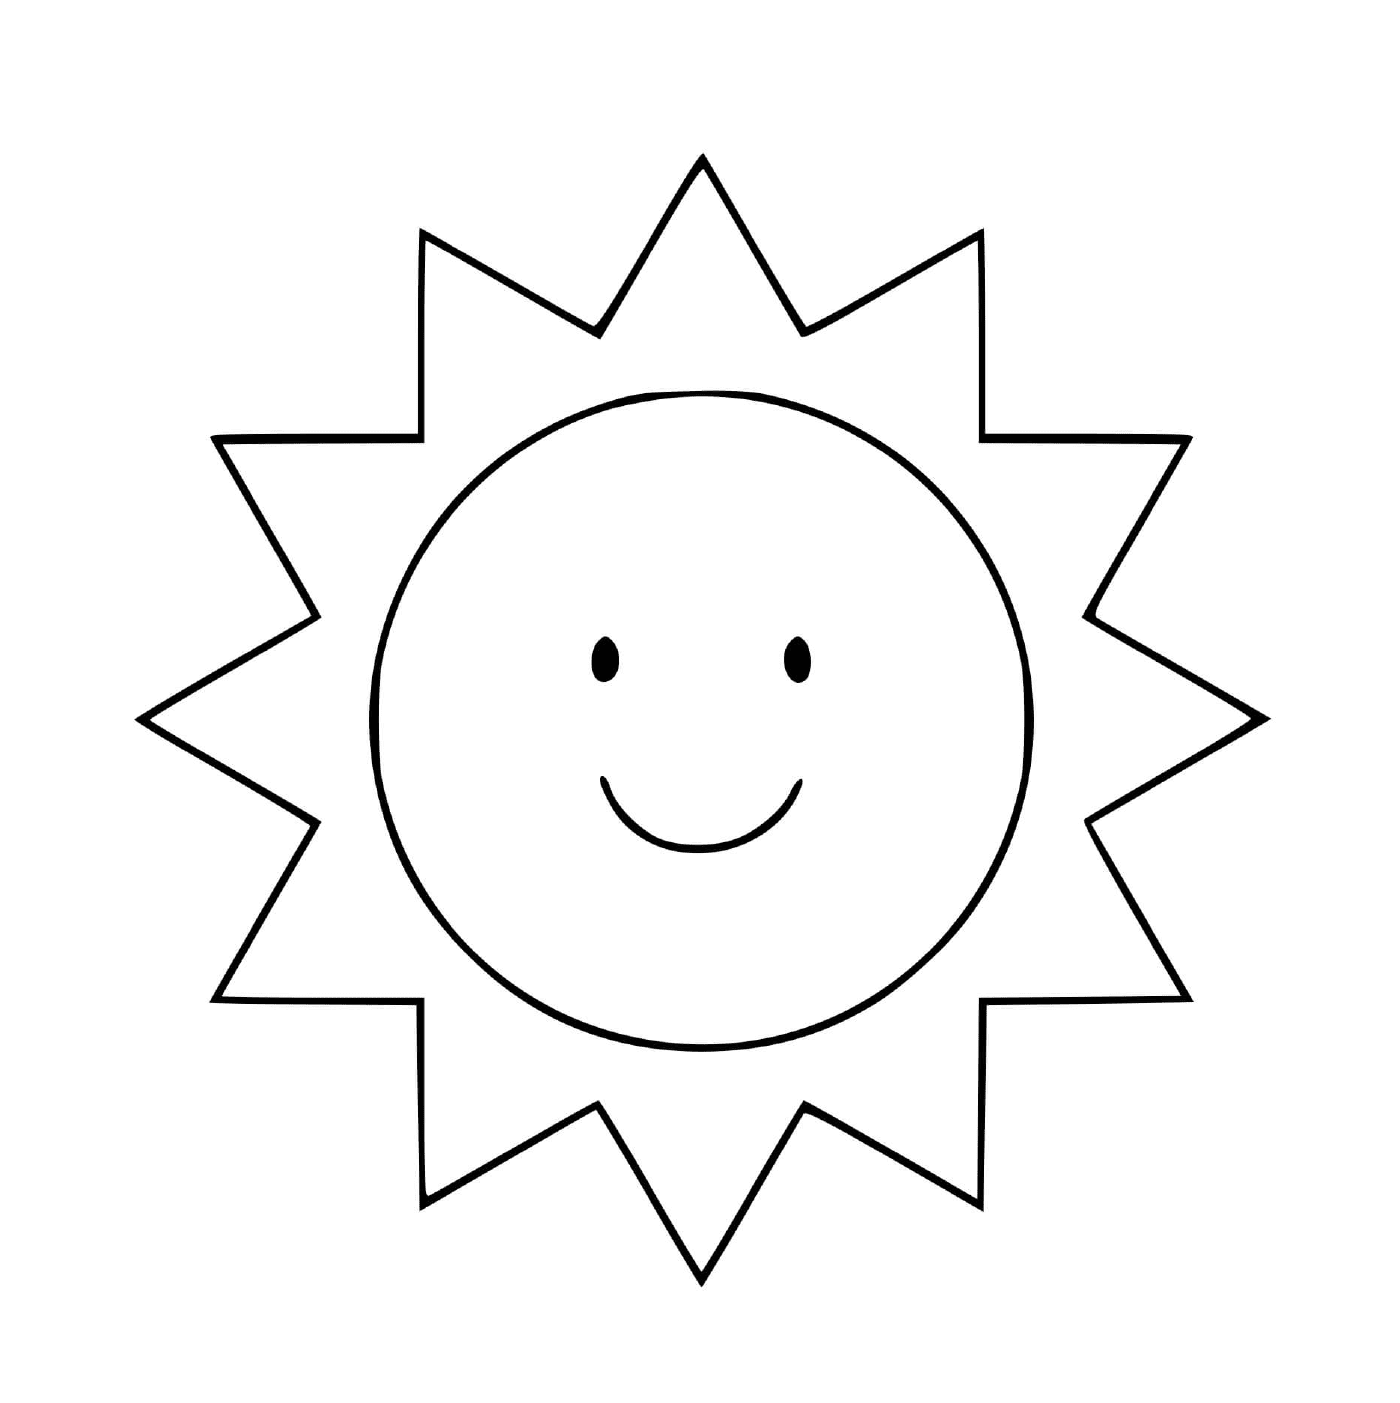  मुस्कुराते हुए सूर्य 